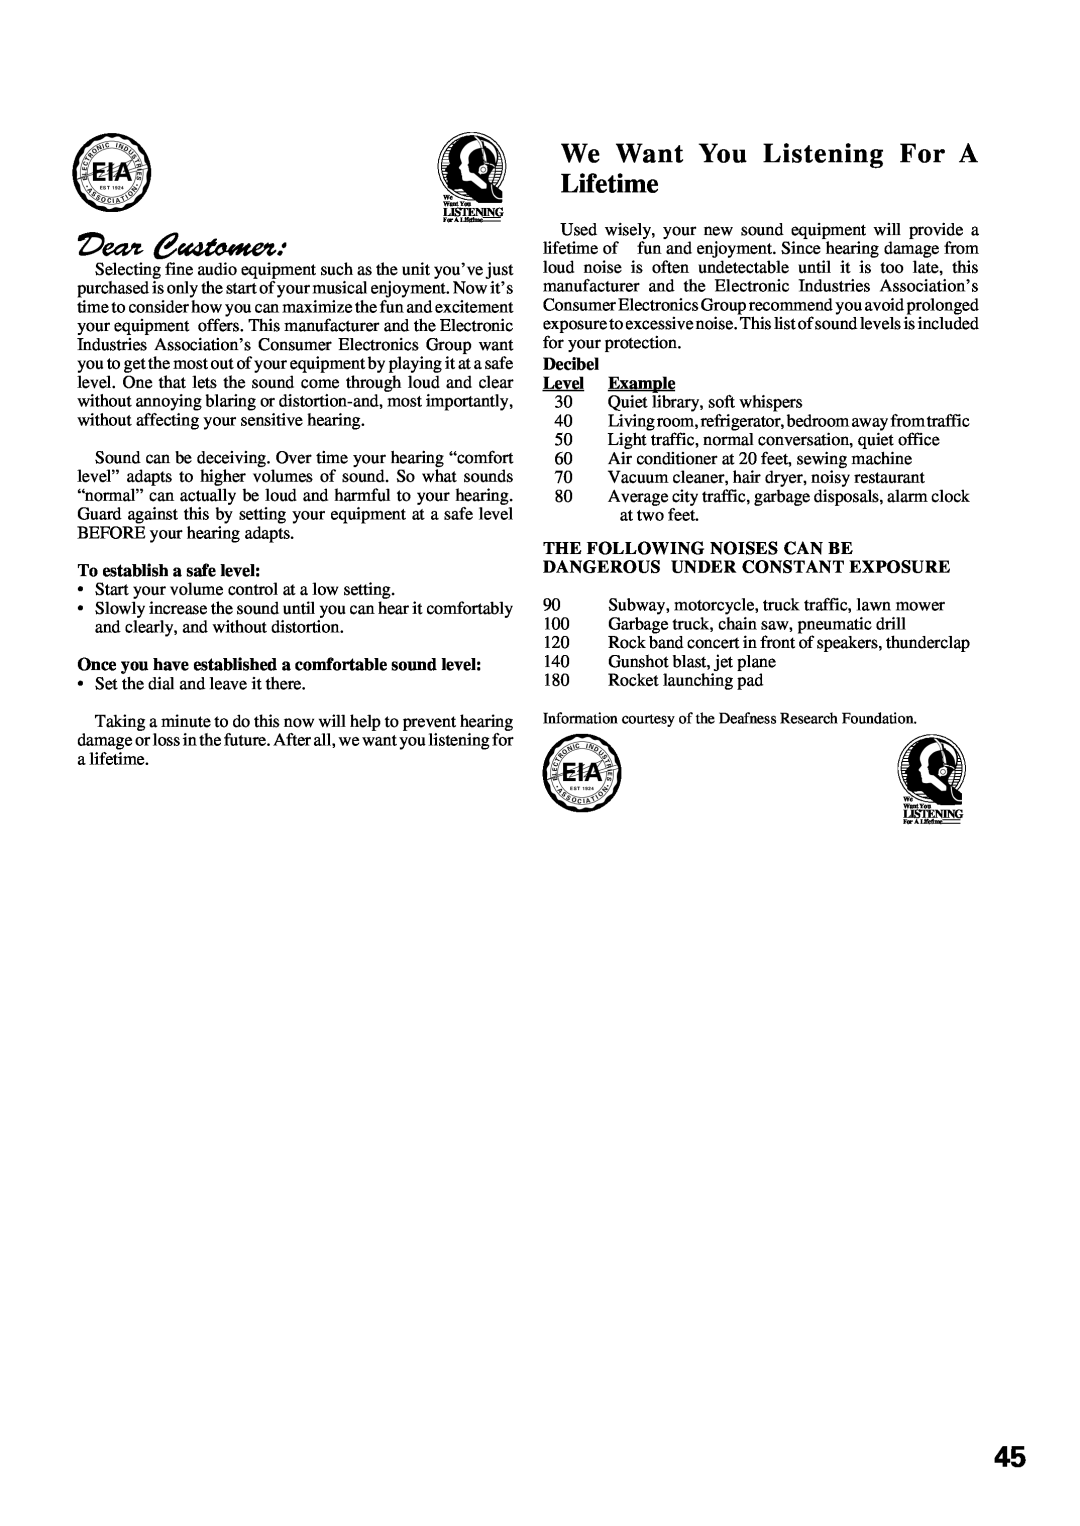 Pioneer VSX-D309 manual • Eia, To establish a safe level, Decibel Level Example 